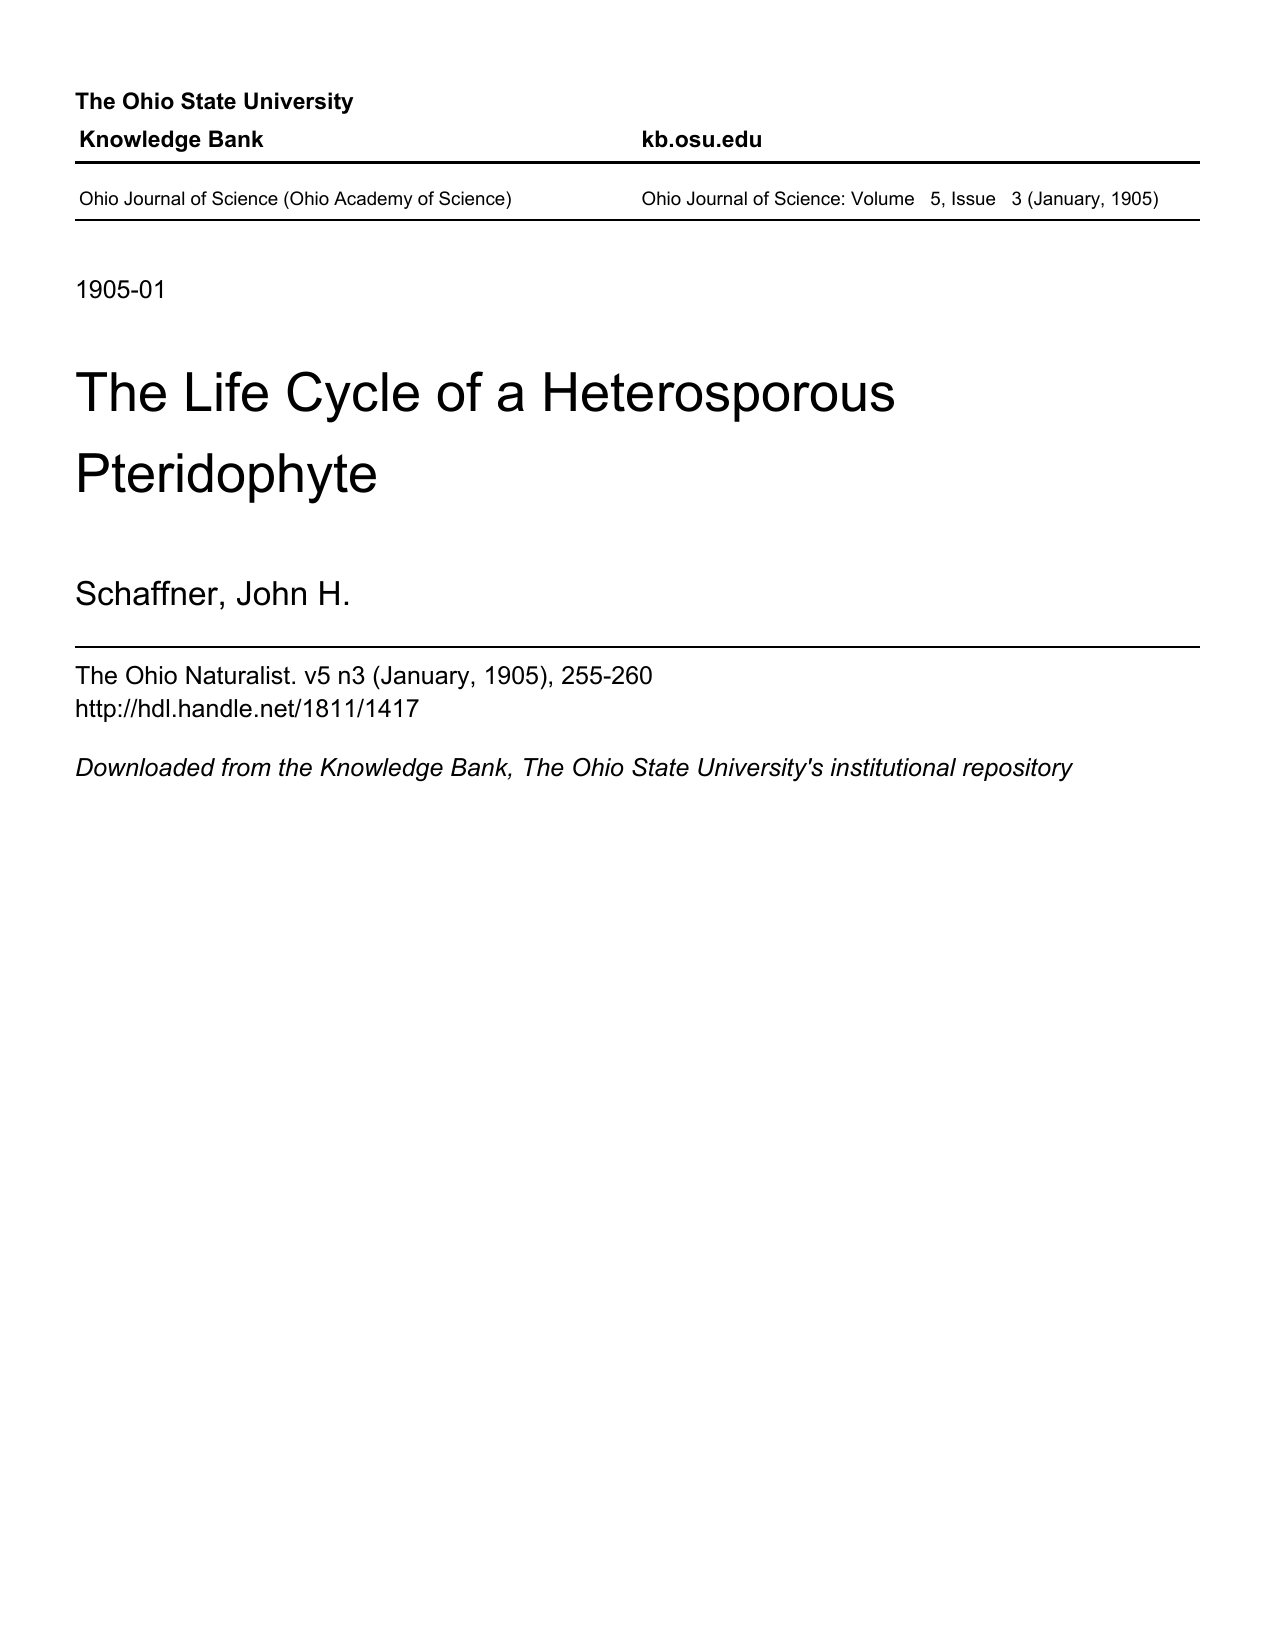 heterosporous life cycle